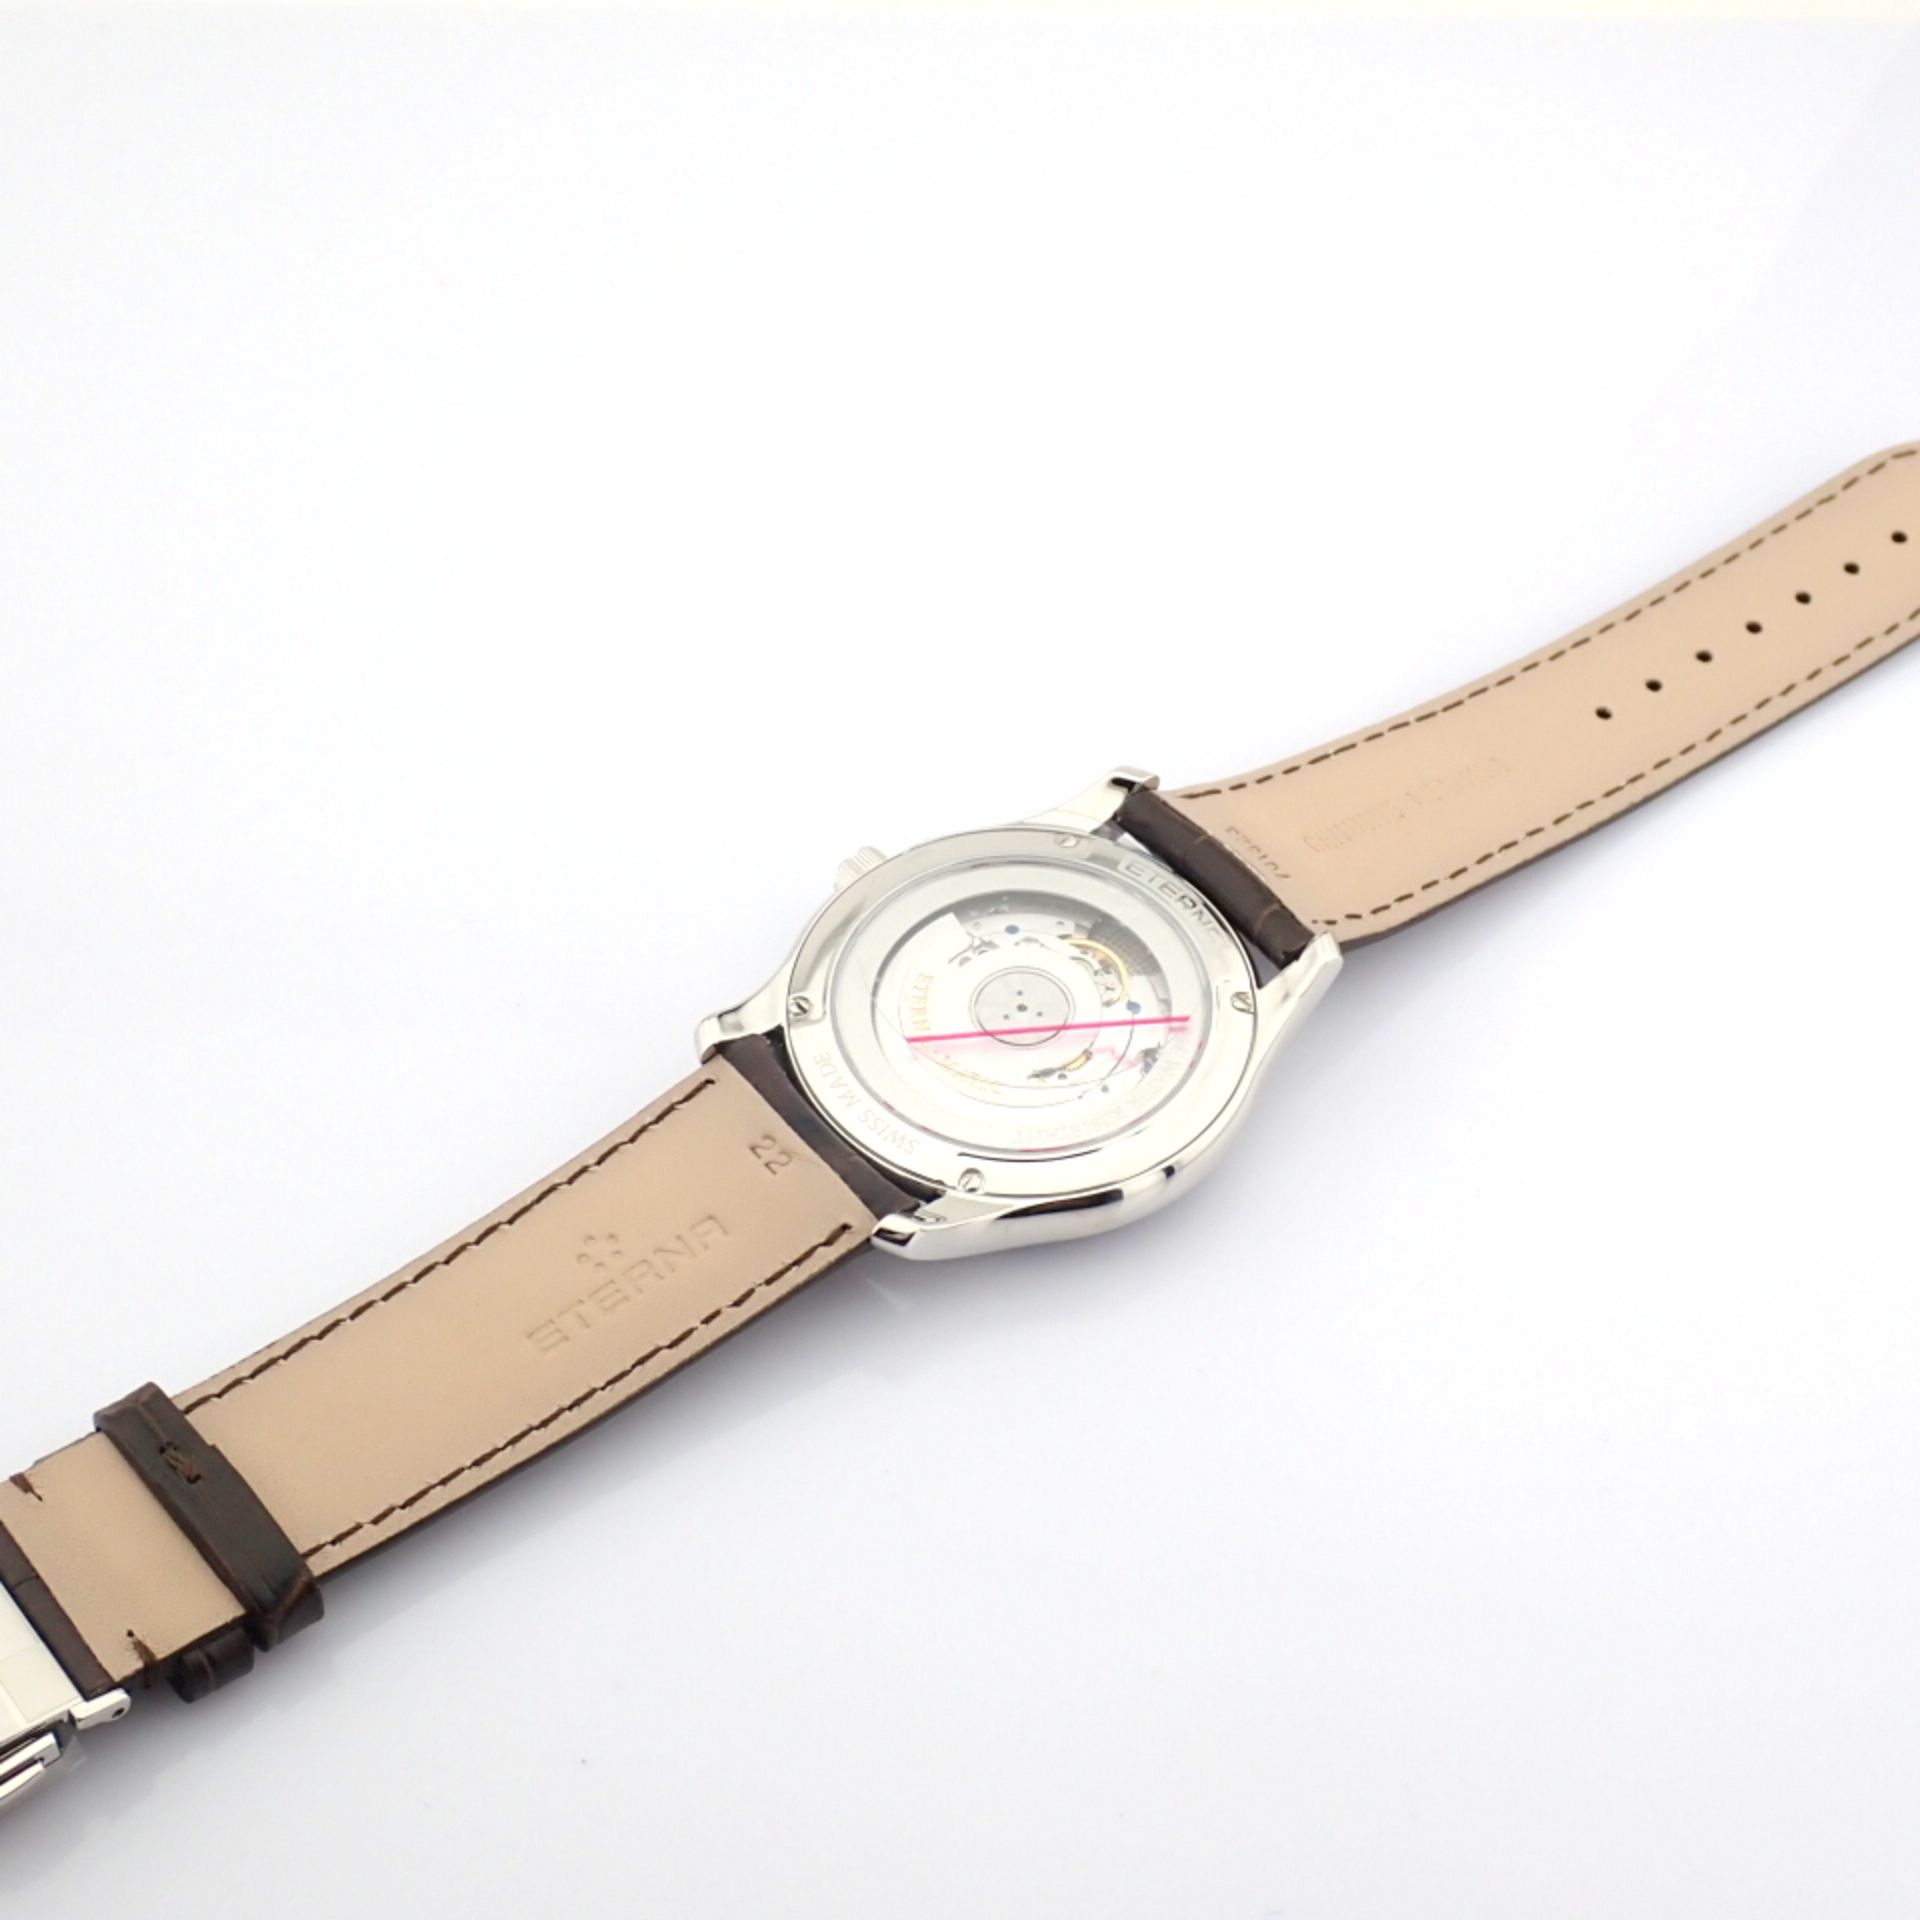 Eterna / Vaughan Big Date 7630.41 - Gentlmen's Steel Wrist Watch - Image 7 of 11